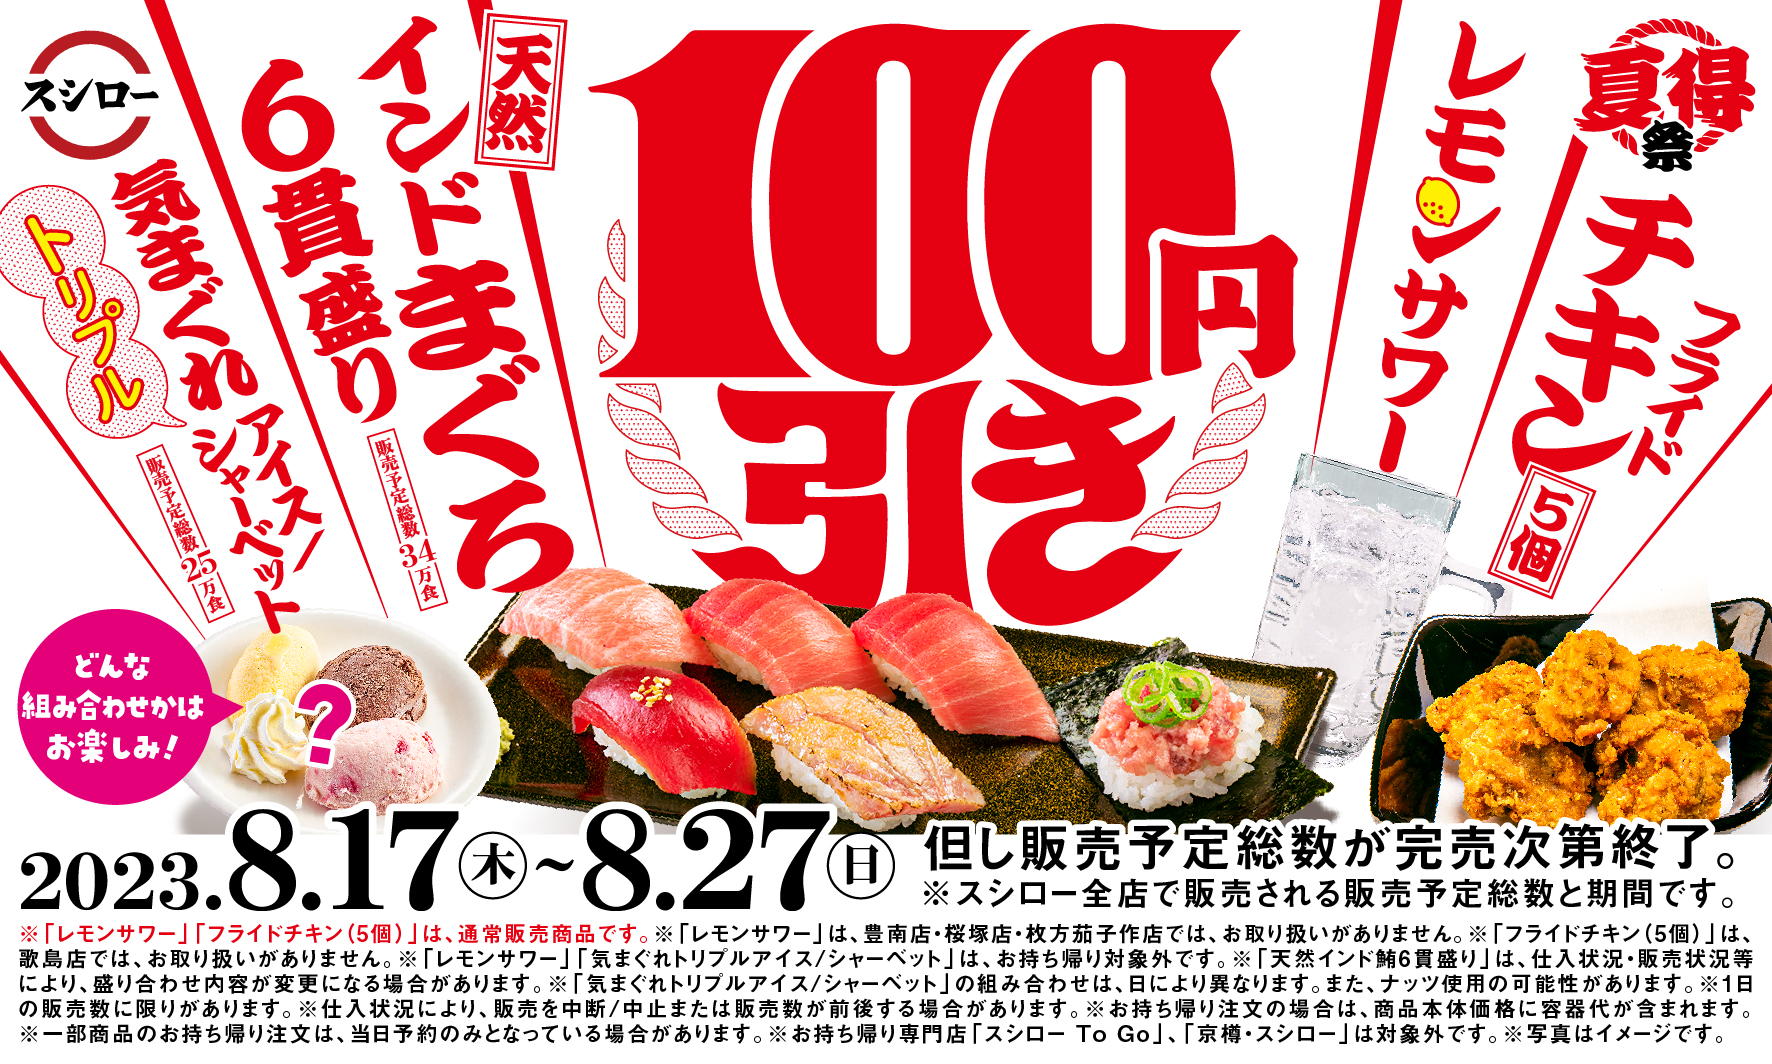 スシロー2023「夏得祭」100円引きキャンペーン